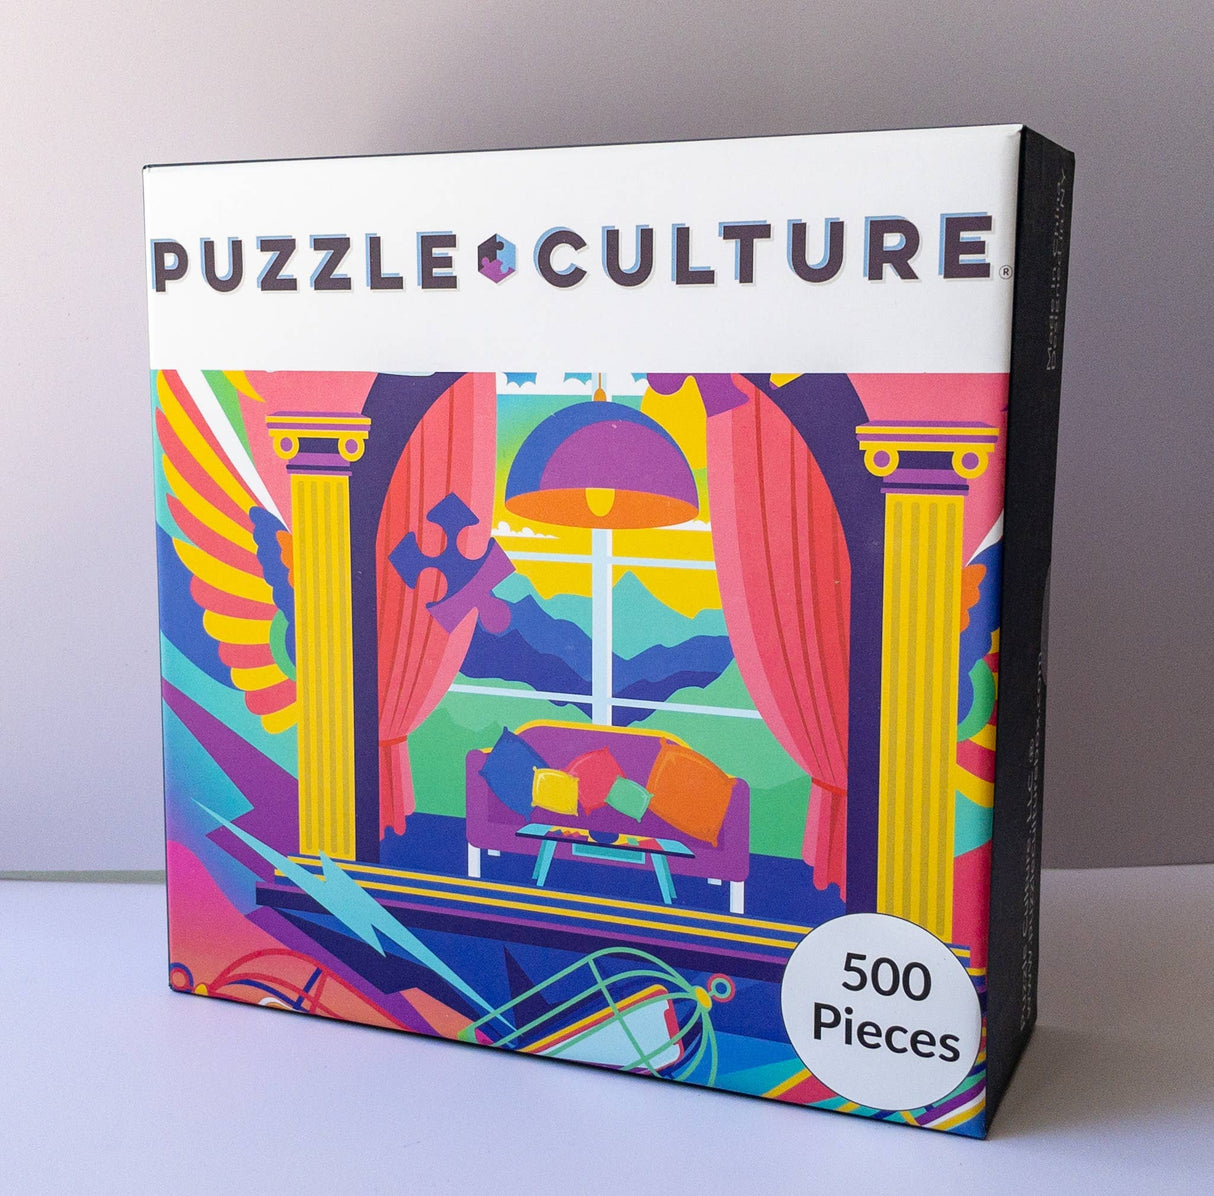 Puzzle Time Puzzle by Puzzle Culture - 500 Piece Jigsaw Puzzle